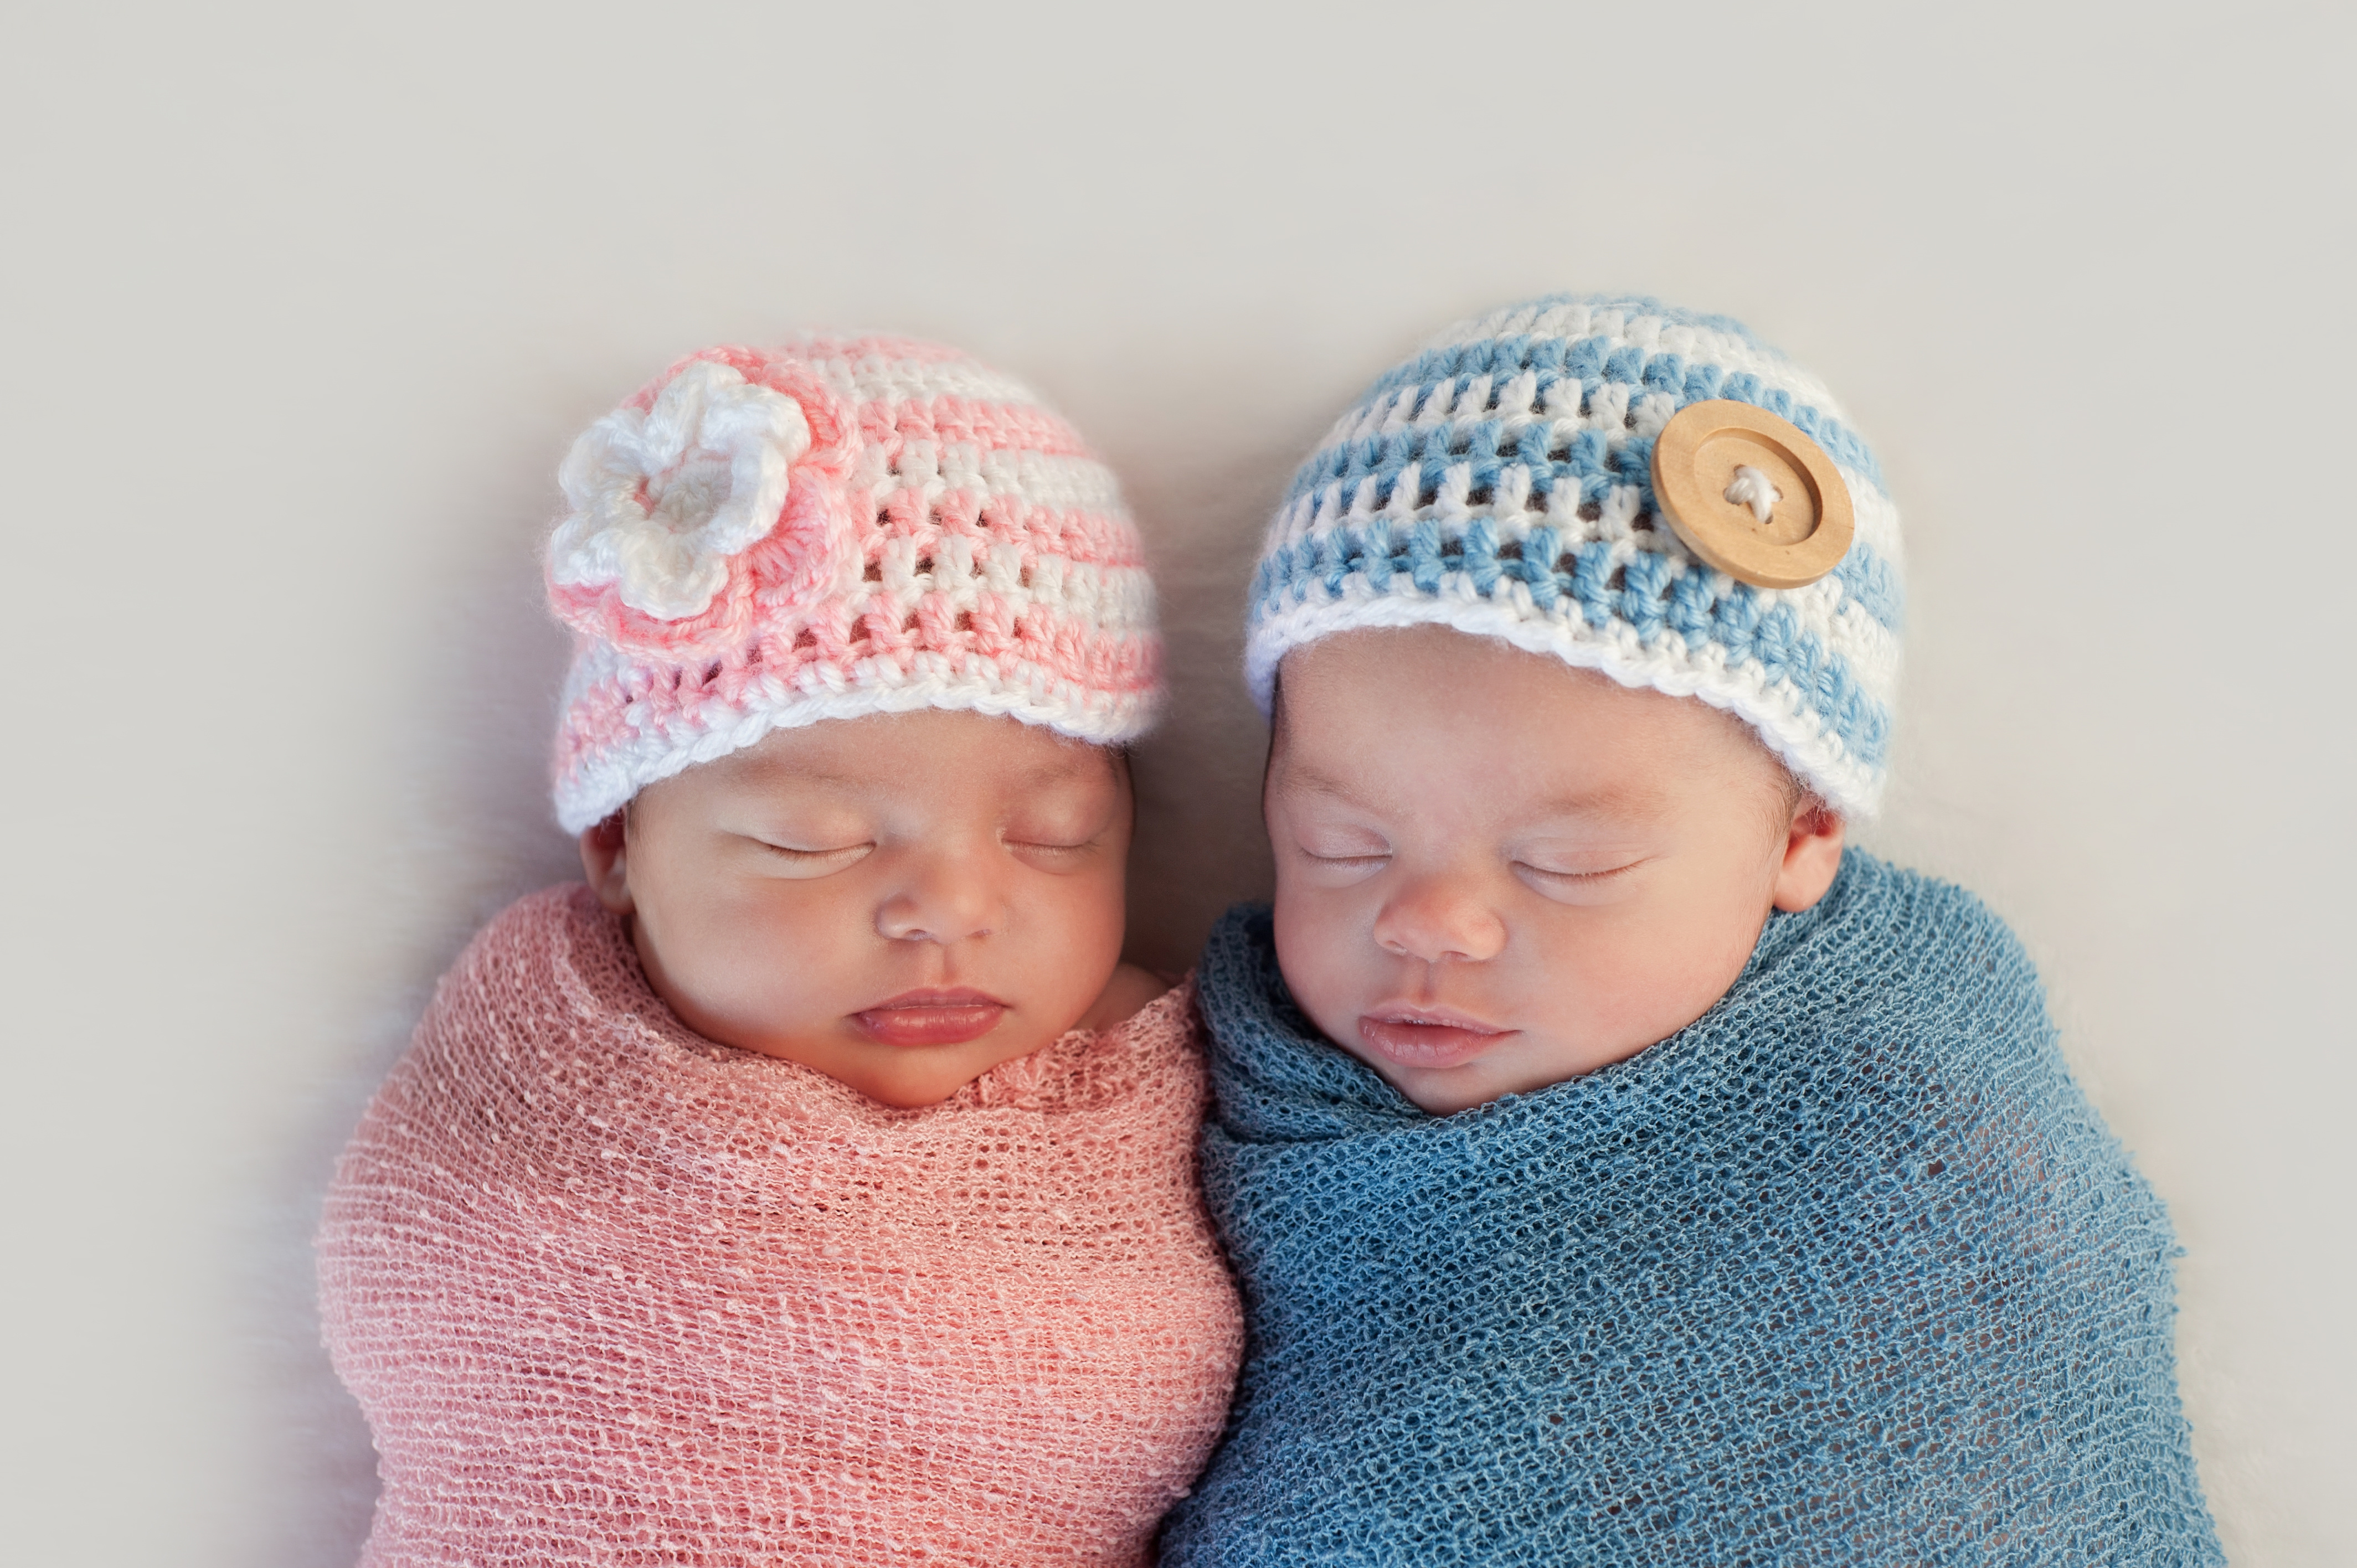 妊娠15週目のエコー写真の見方 男の子 女の子を見分けるポイント Nipt 新型出生前診断 のコラム 平石クリニック